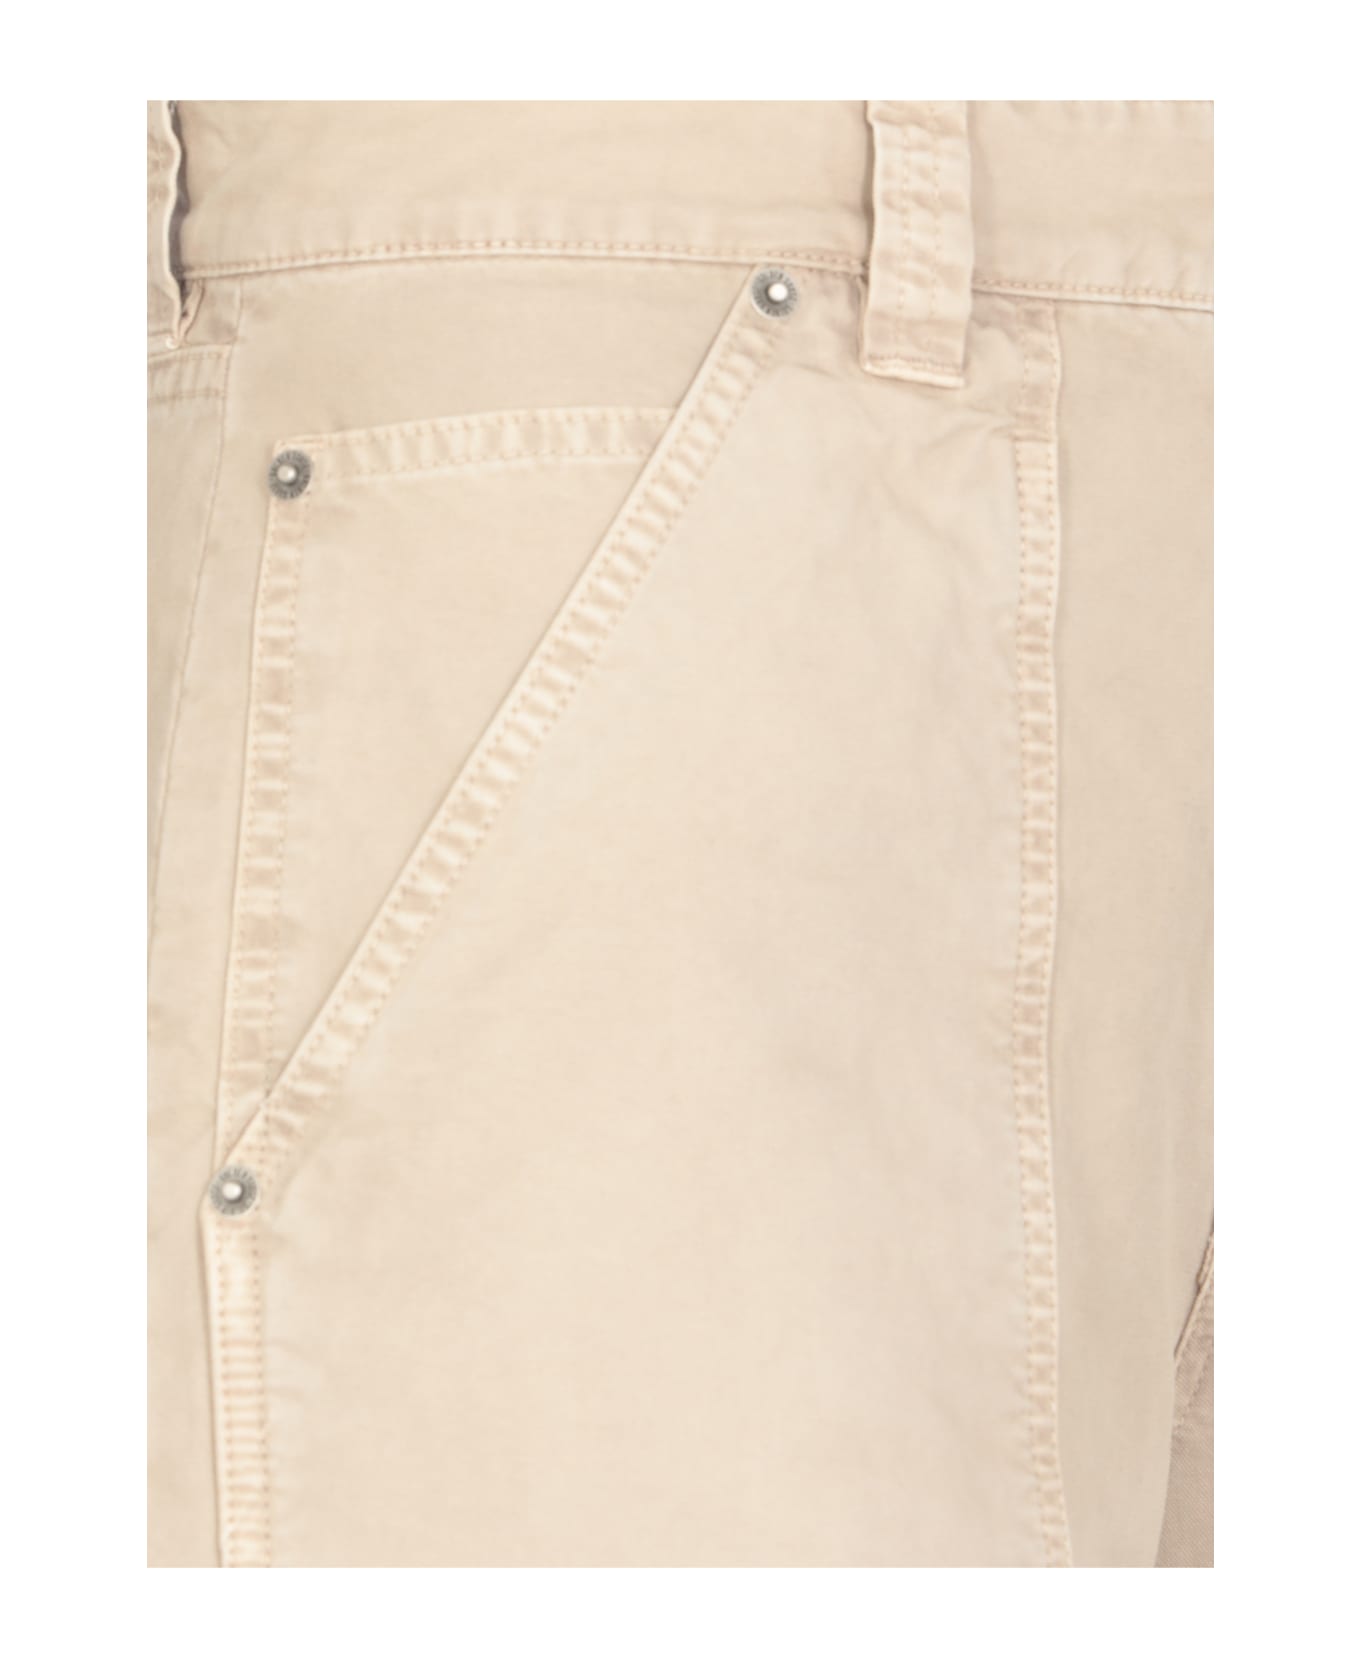 Golden Goose Cotton Cargo Pants - Beige